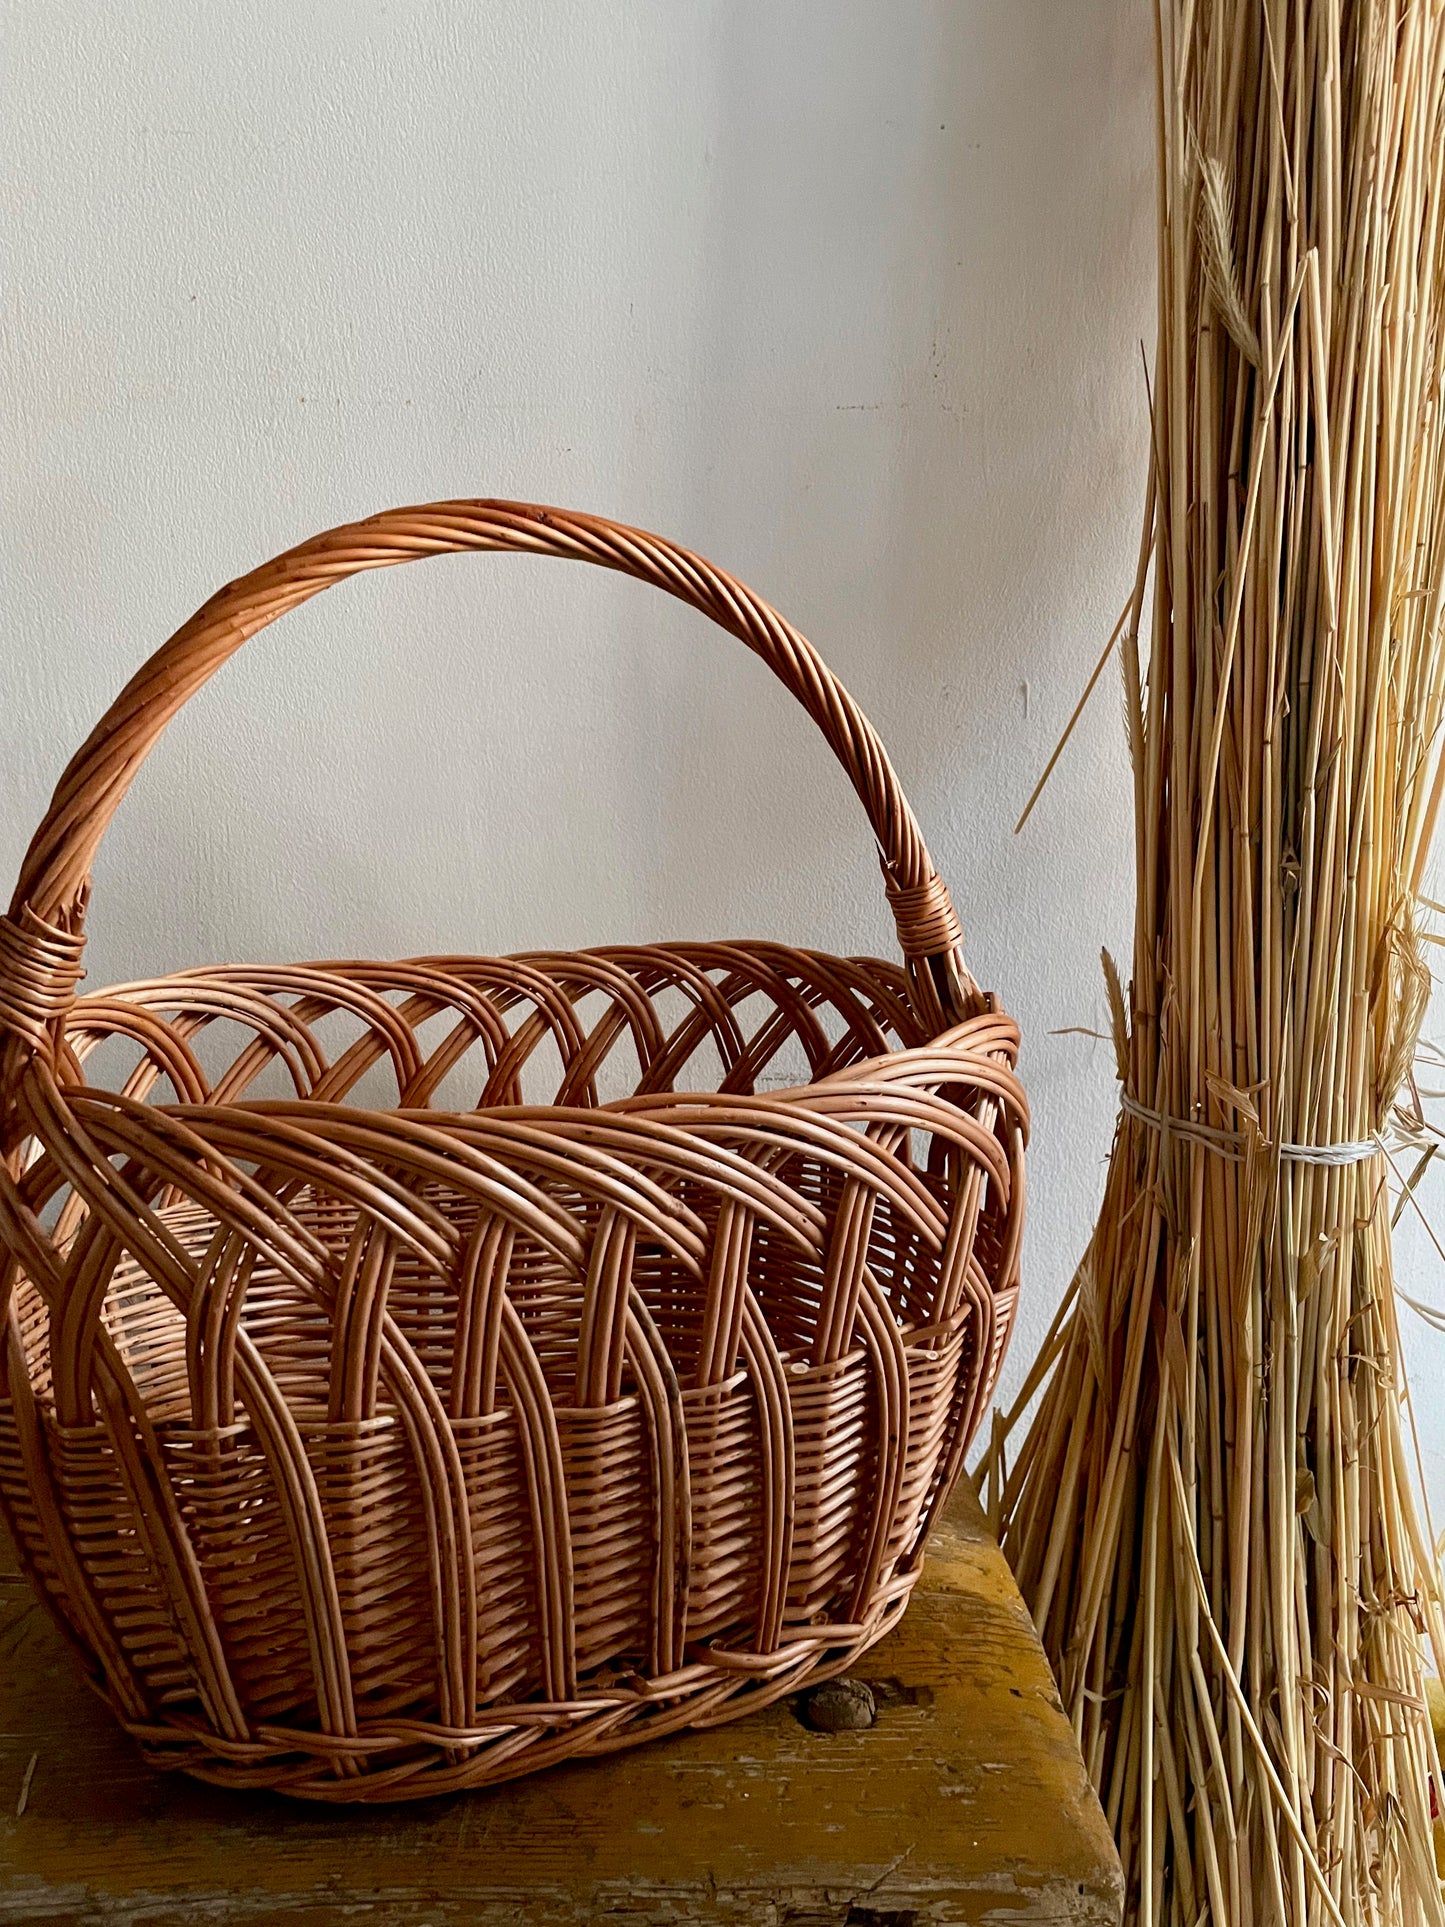 Willow Shopping Basket